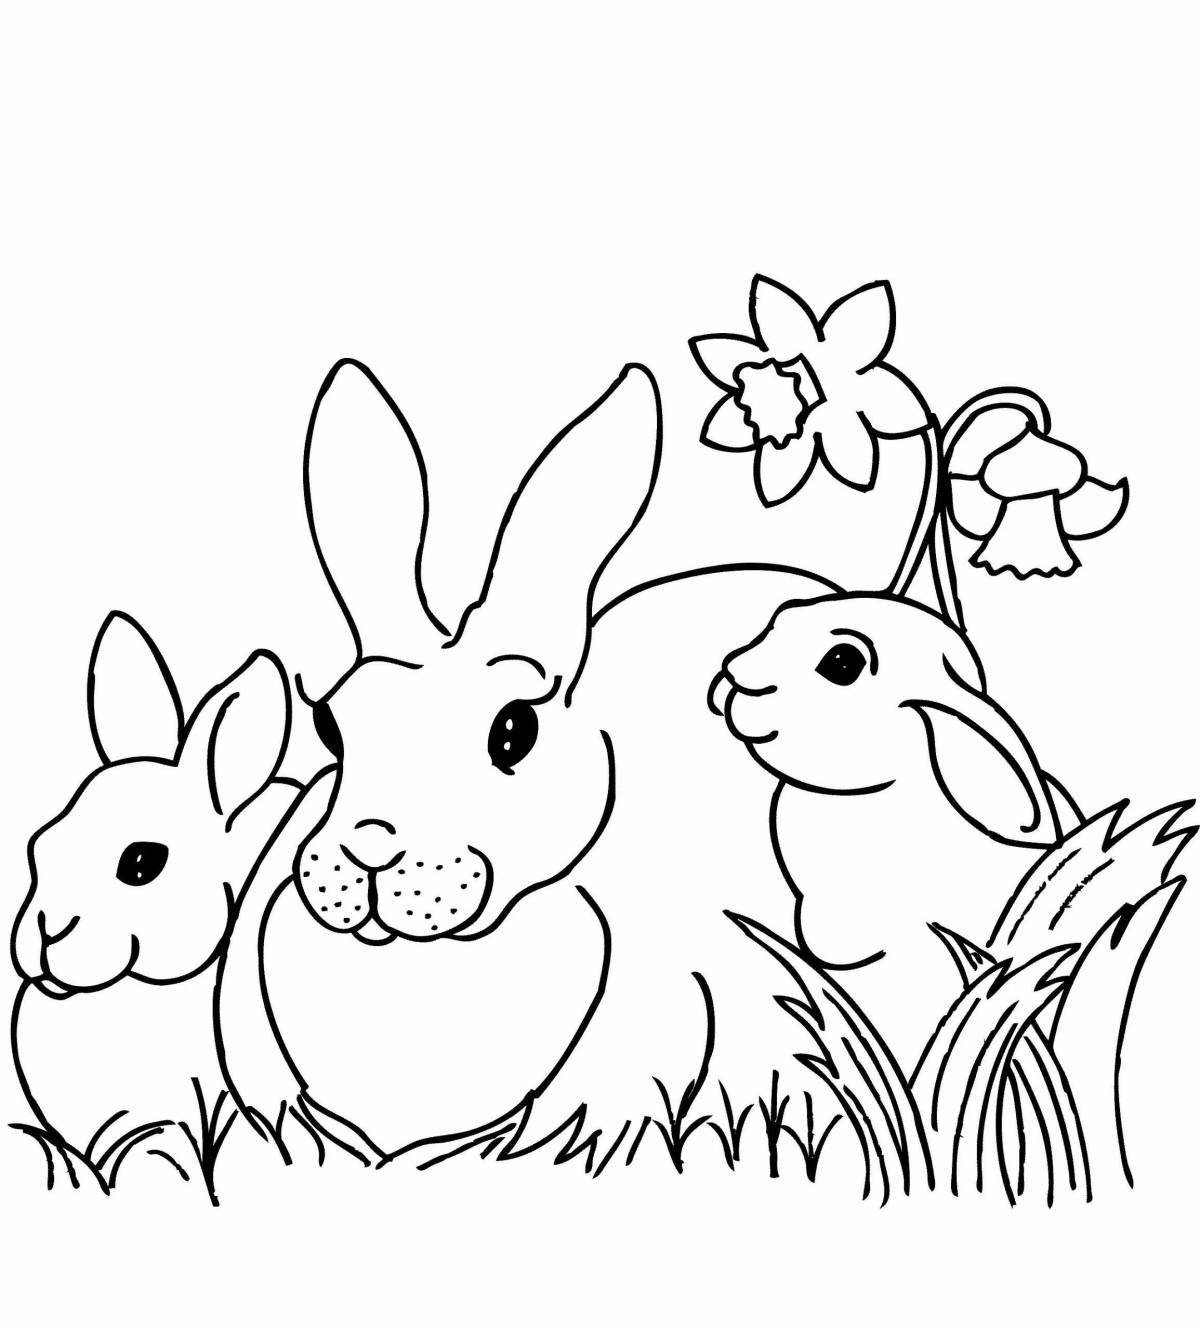 Восхитительный рисунок кролика